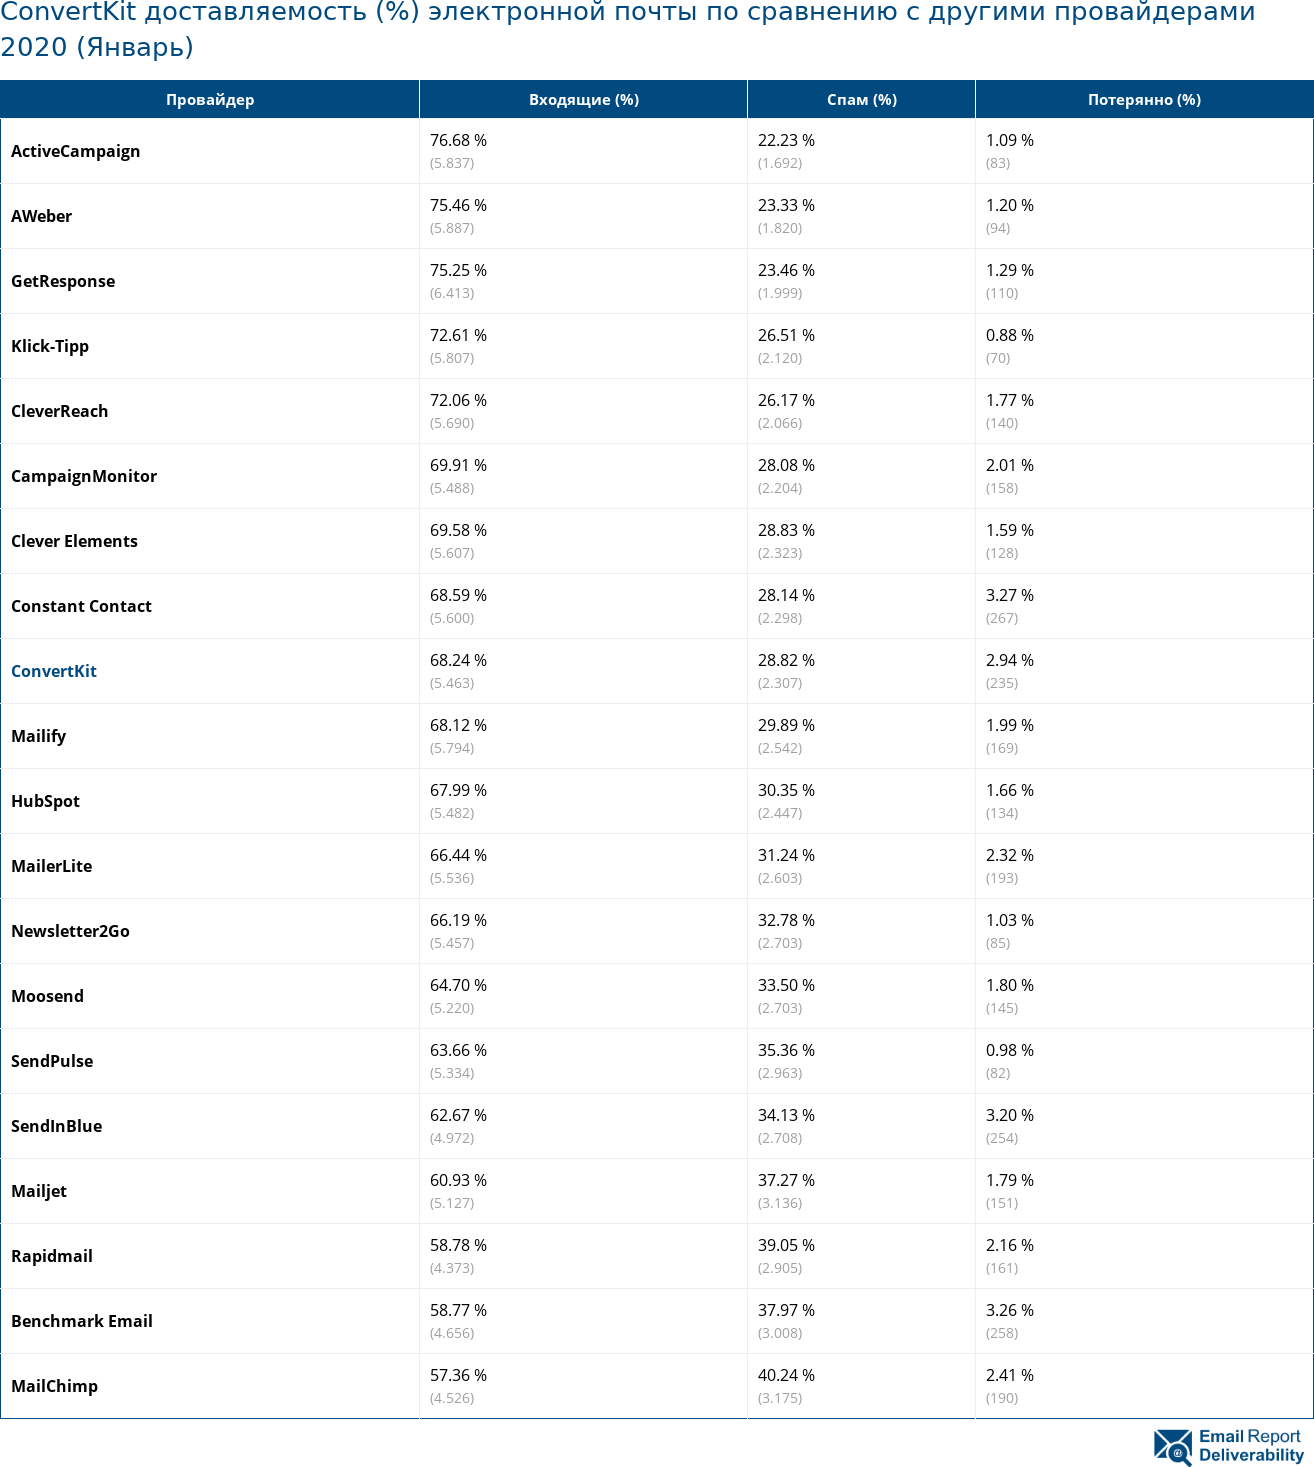 ConvertKit доставляемость (%) электронной почты по сравнению с другими провайдерами 2020 (Январь)